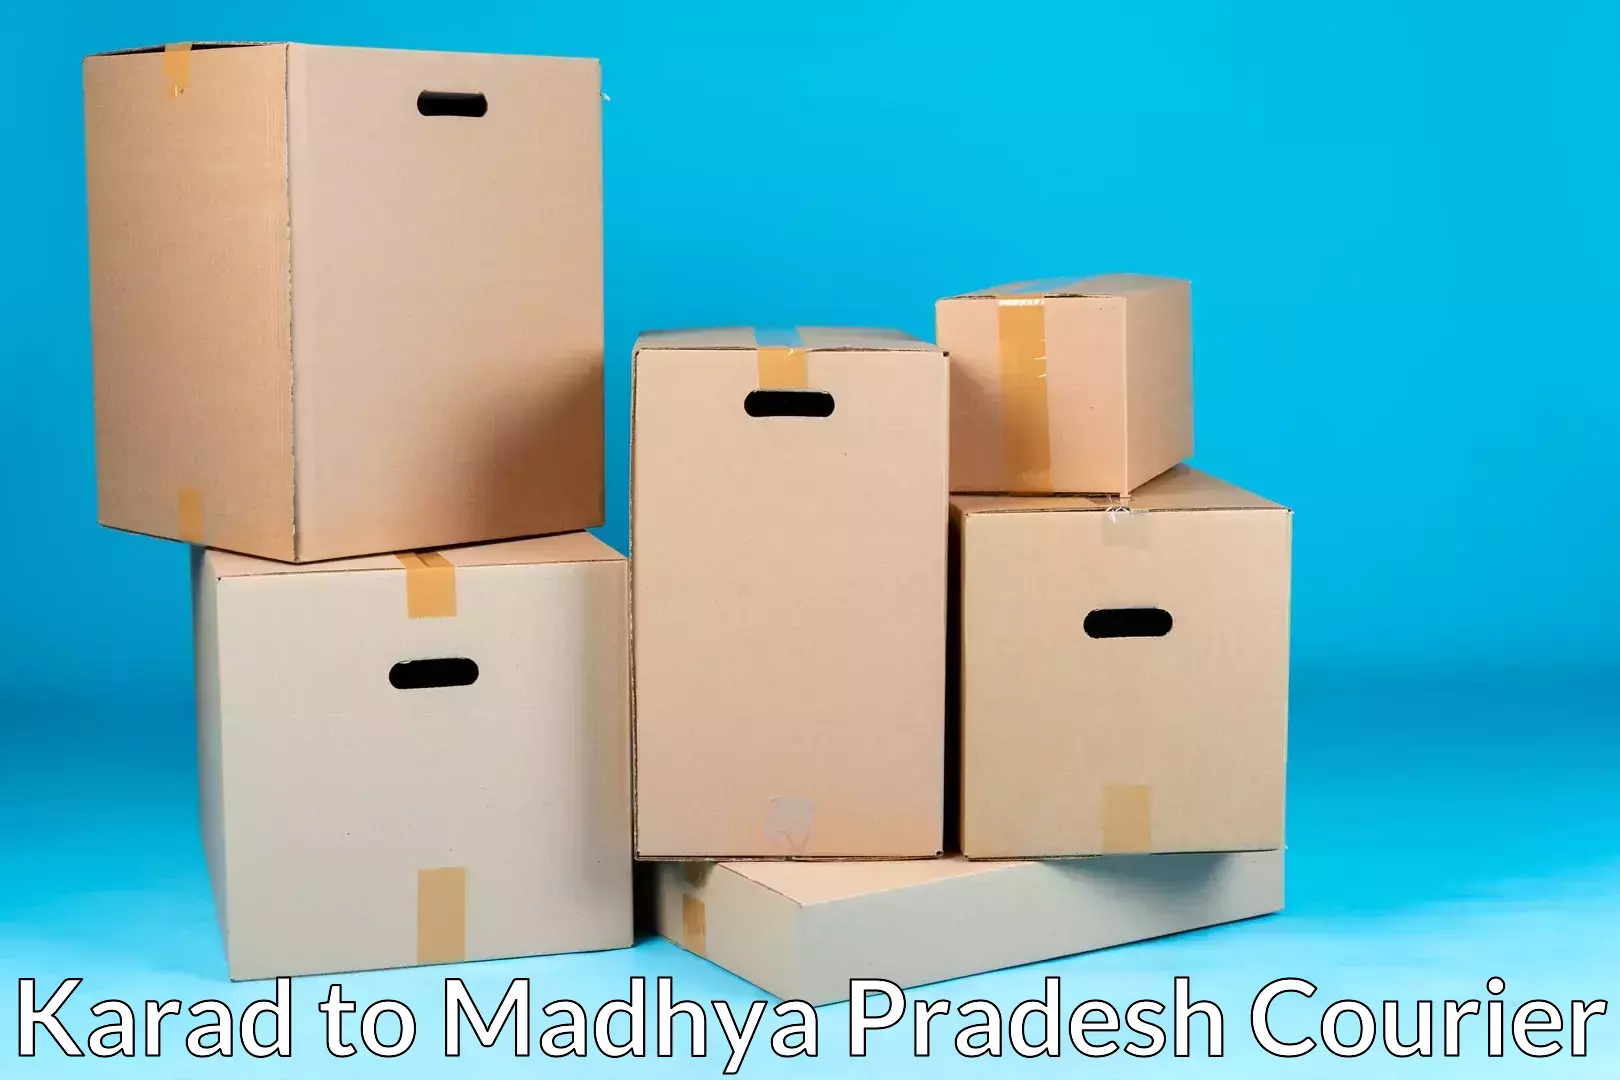 Moving and handling services Karad to Madhya Pradesh